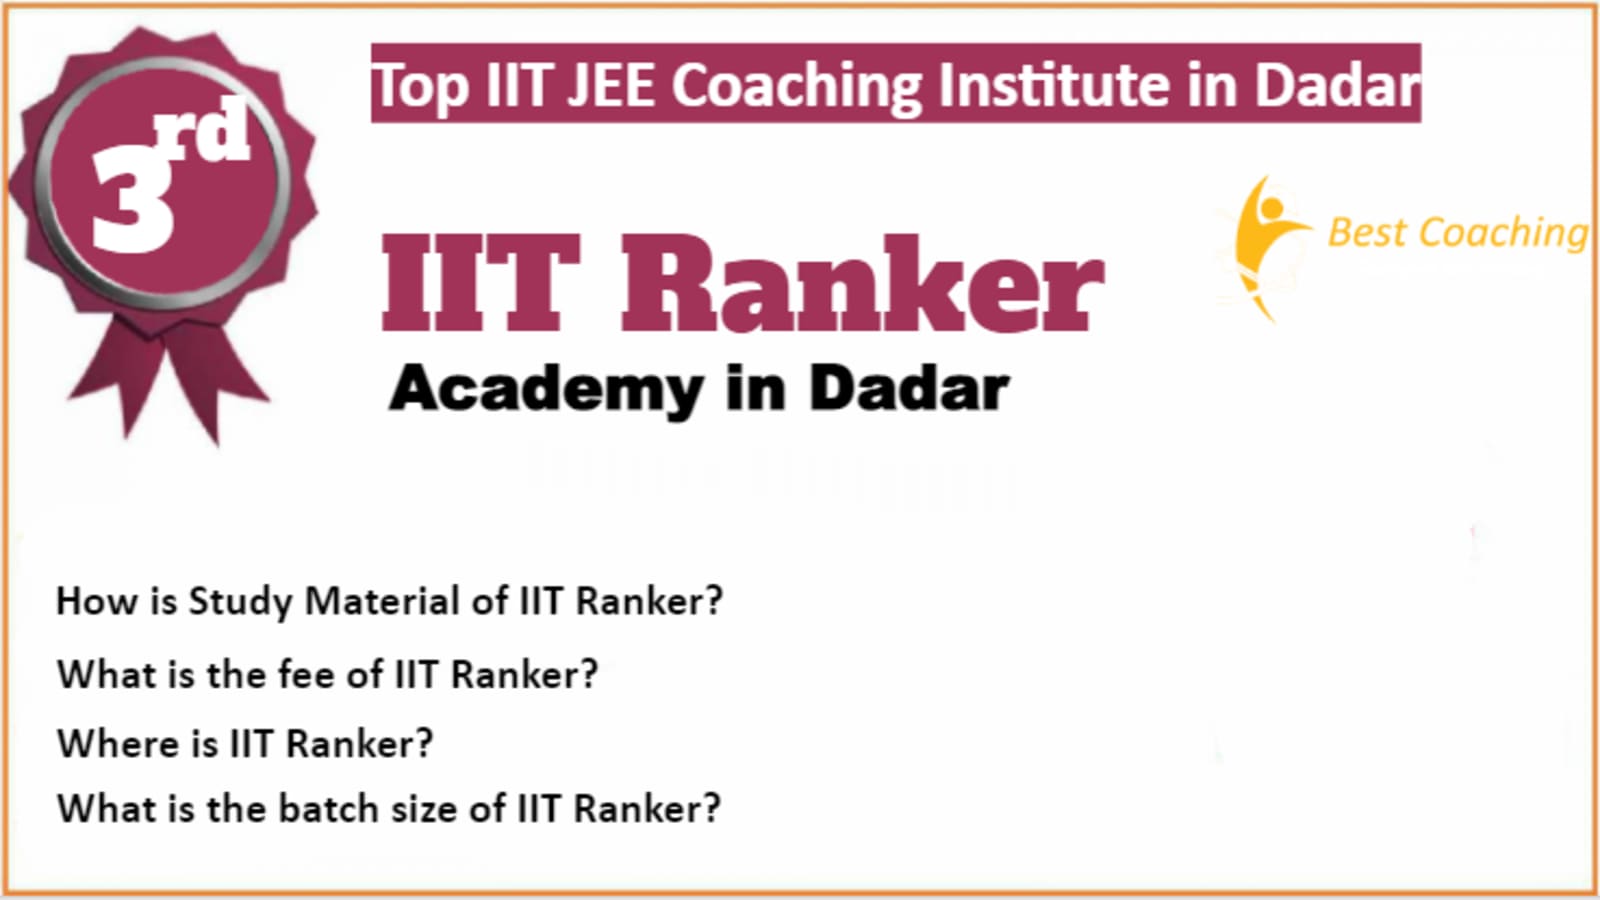 Rank 3 Best IIT JEE Coaching in Dadar